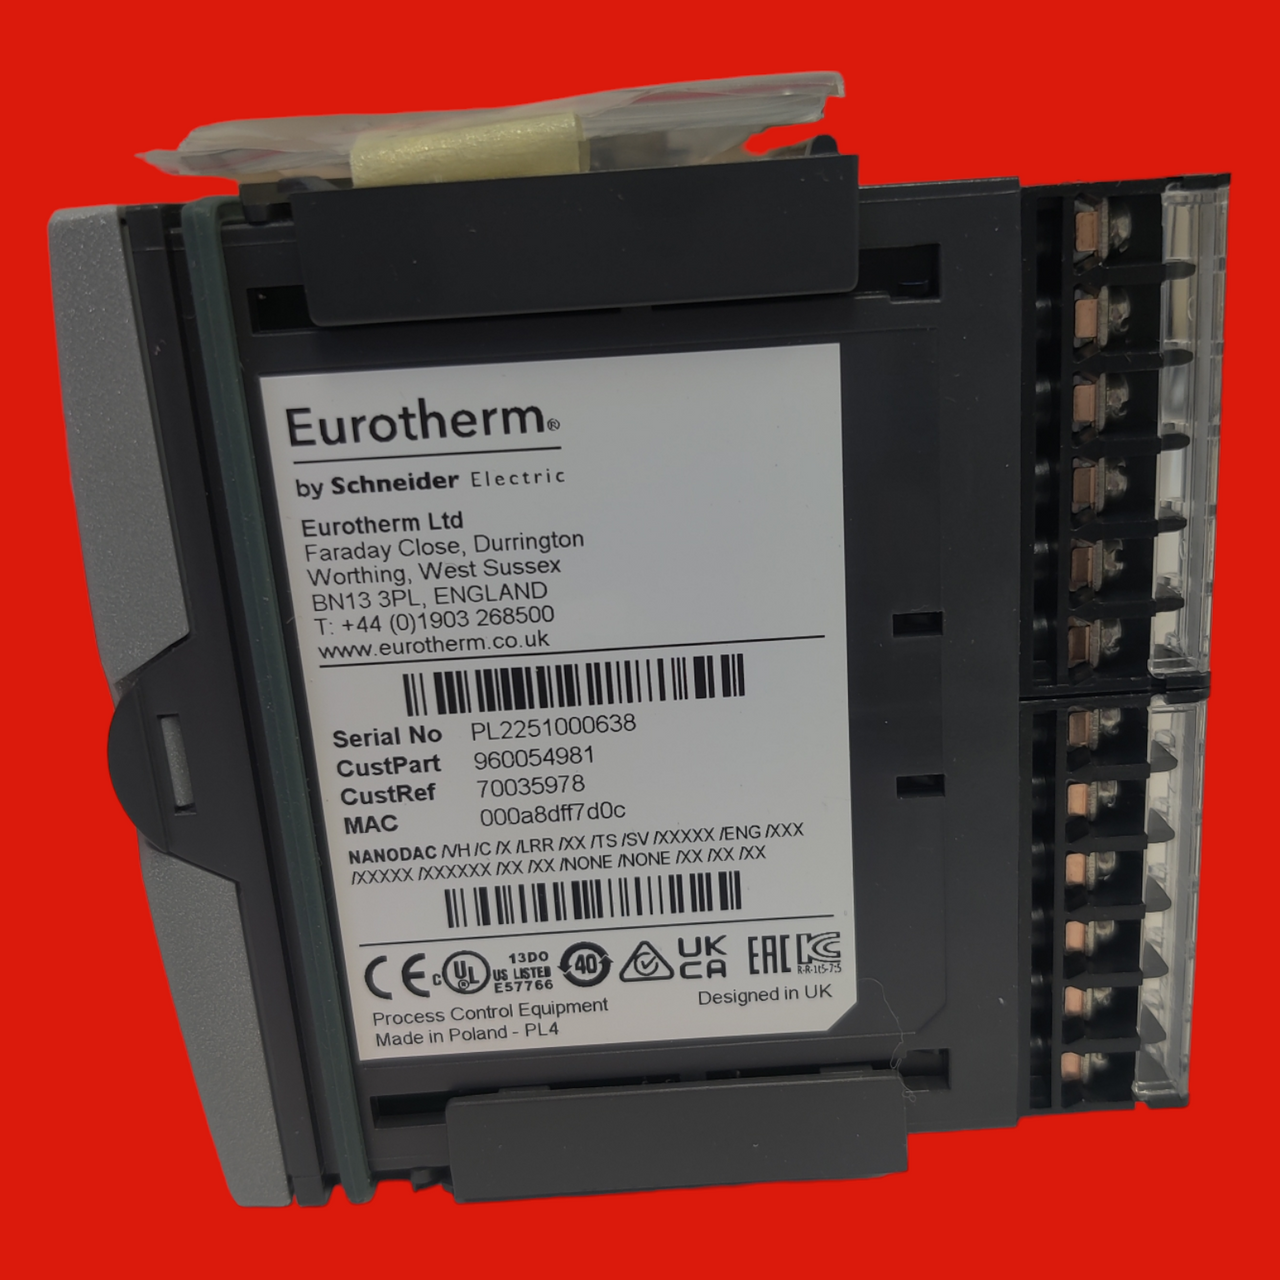 Eurotherm NANODACVHCXLRRXXTSSVXXXXXENGXXXXXXXXXXXXXXXXXXXXXXXX/ Nanodac Temperature / Carbon Controller & Recorder